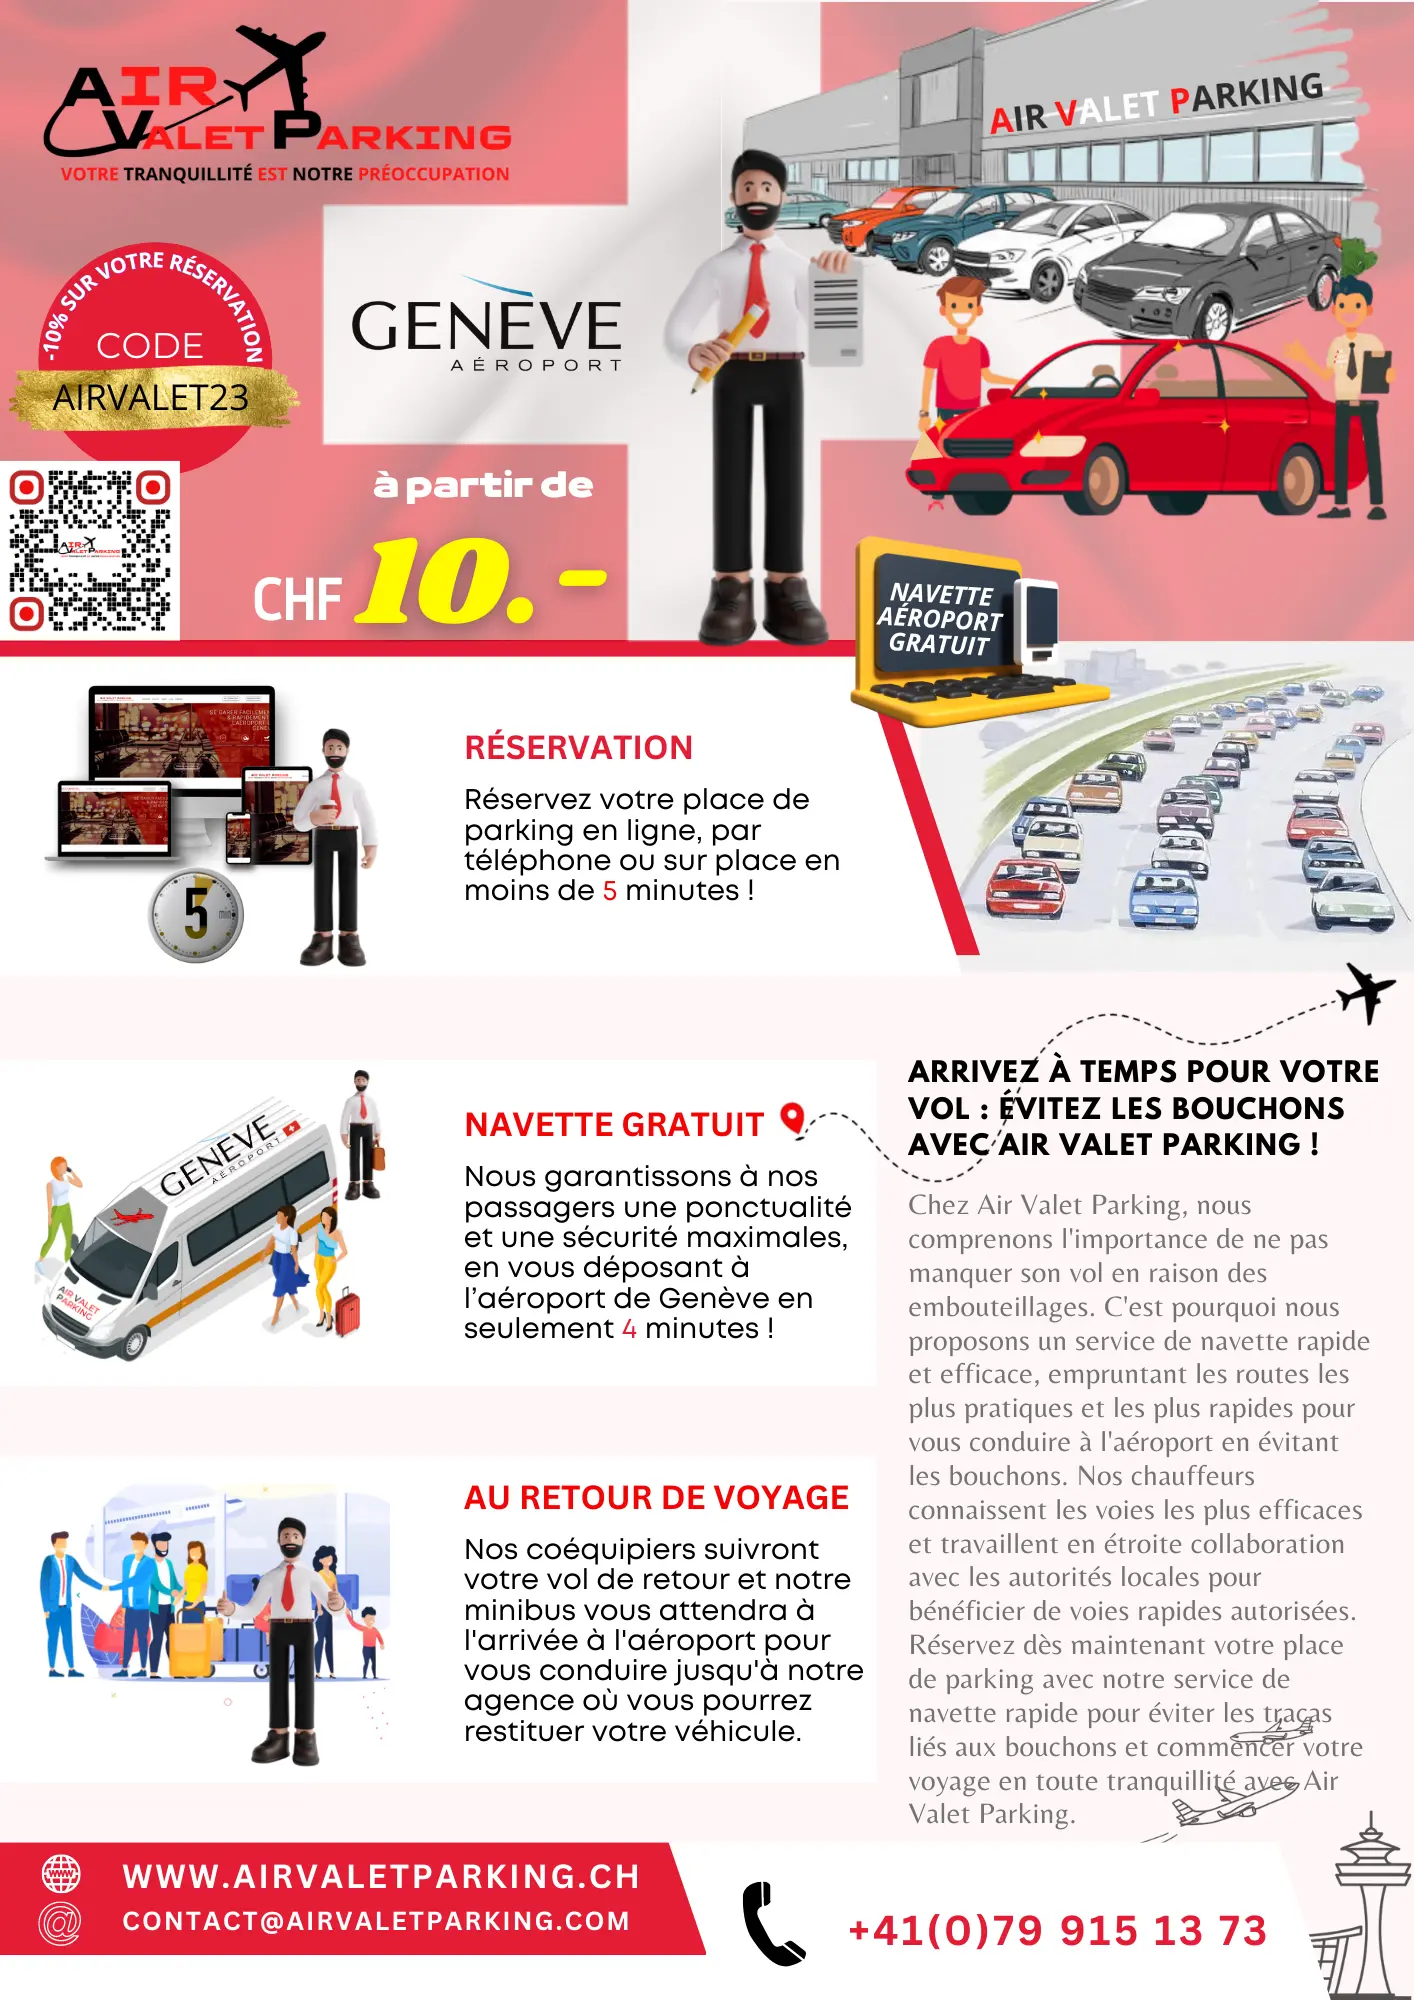 Réservez votre place de parking à l'aéroport de Genève et profitez du service de valet parking chez Air Valet Parking